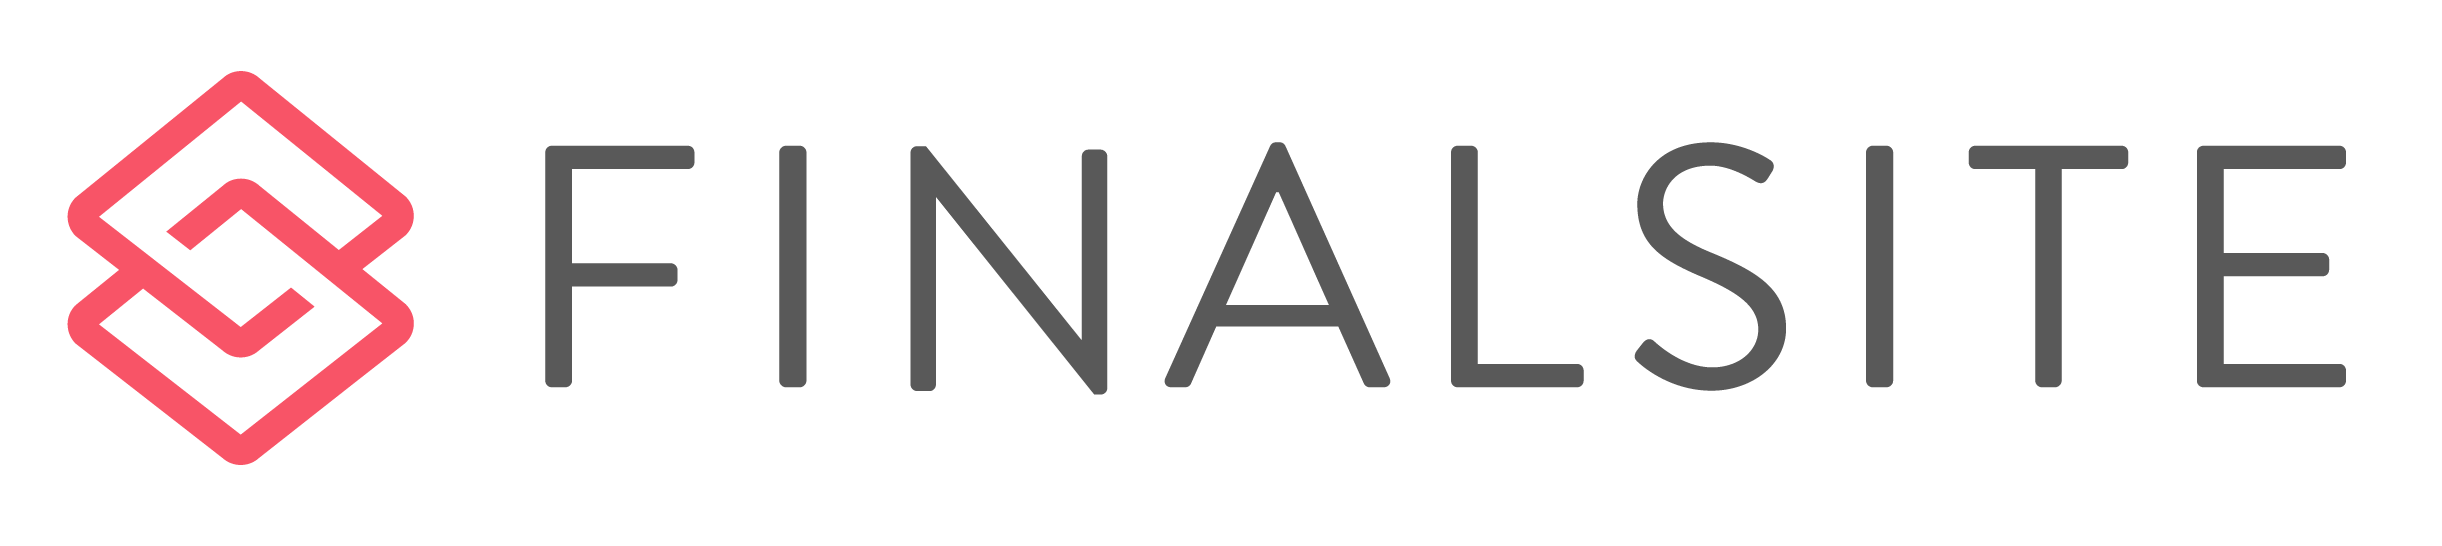 Finalsite logo